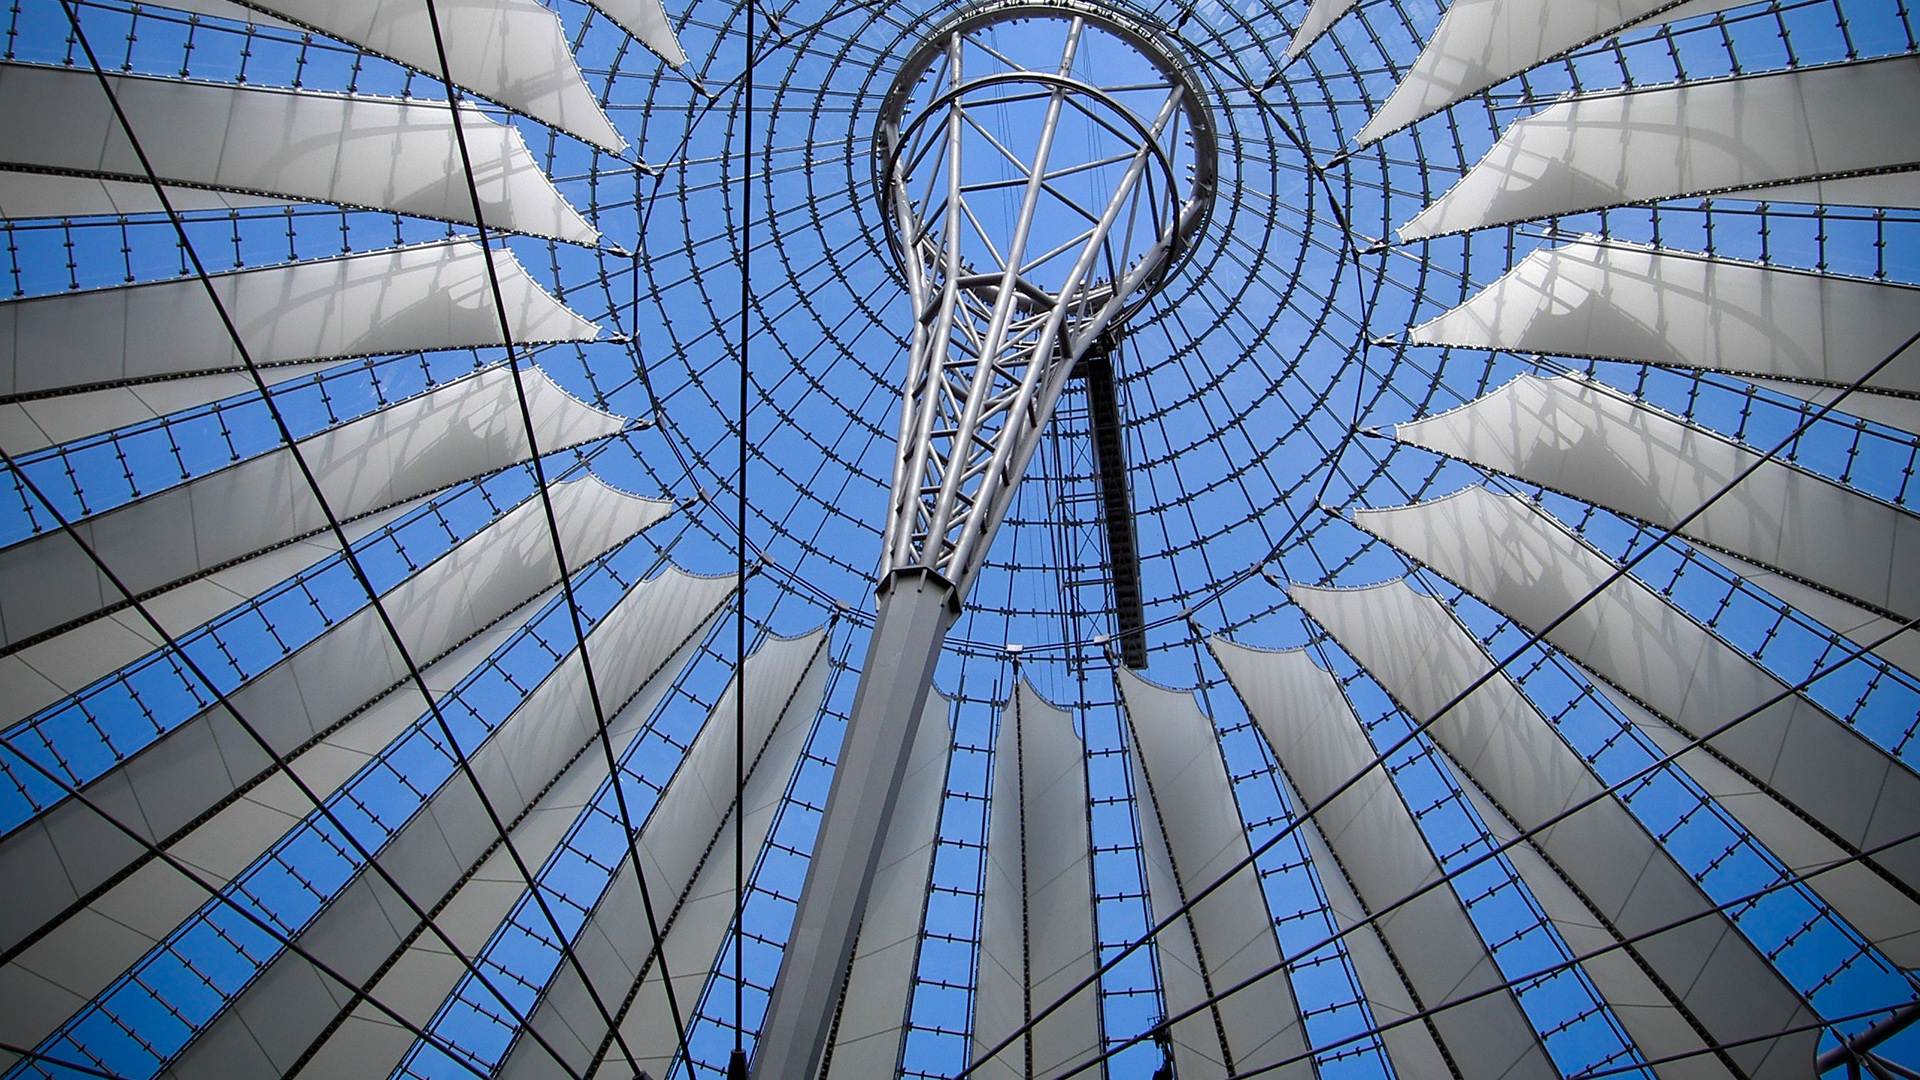 Glasdach des Sony-Center in Berlin von unten betrachtet mit blauem Himmel